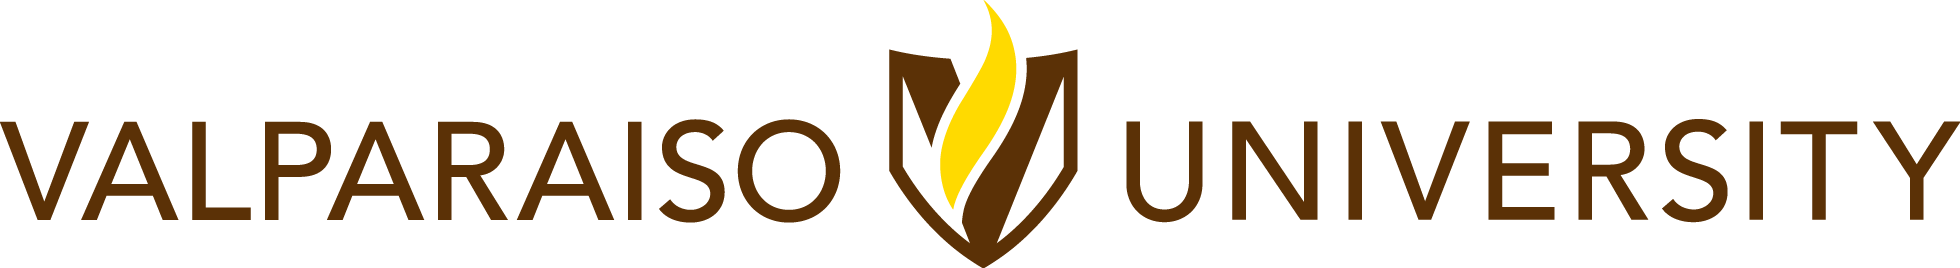 Valpraiso Logo - Our Logos | Valparaiso University Brand